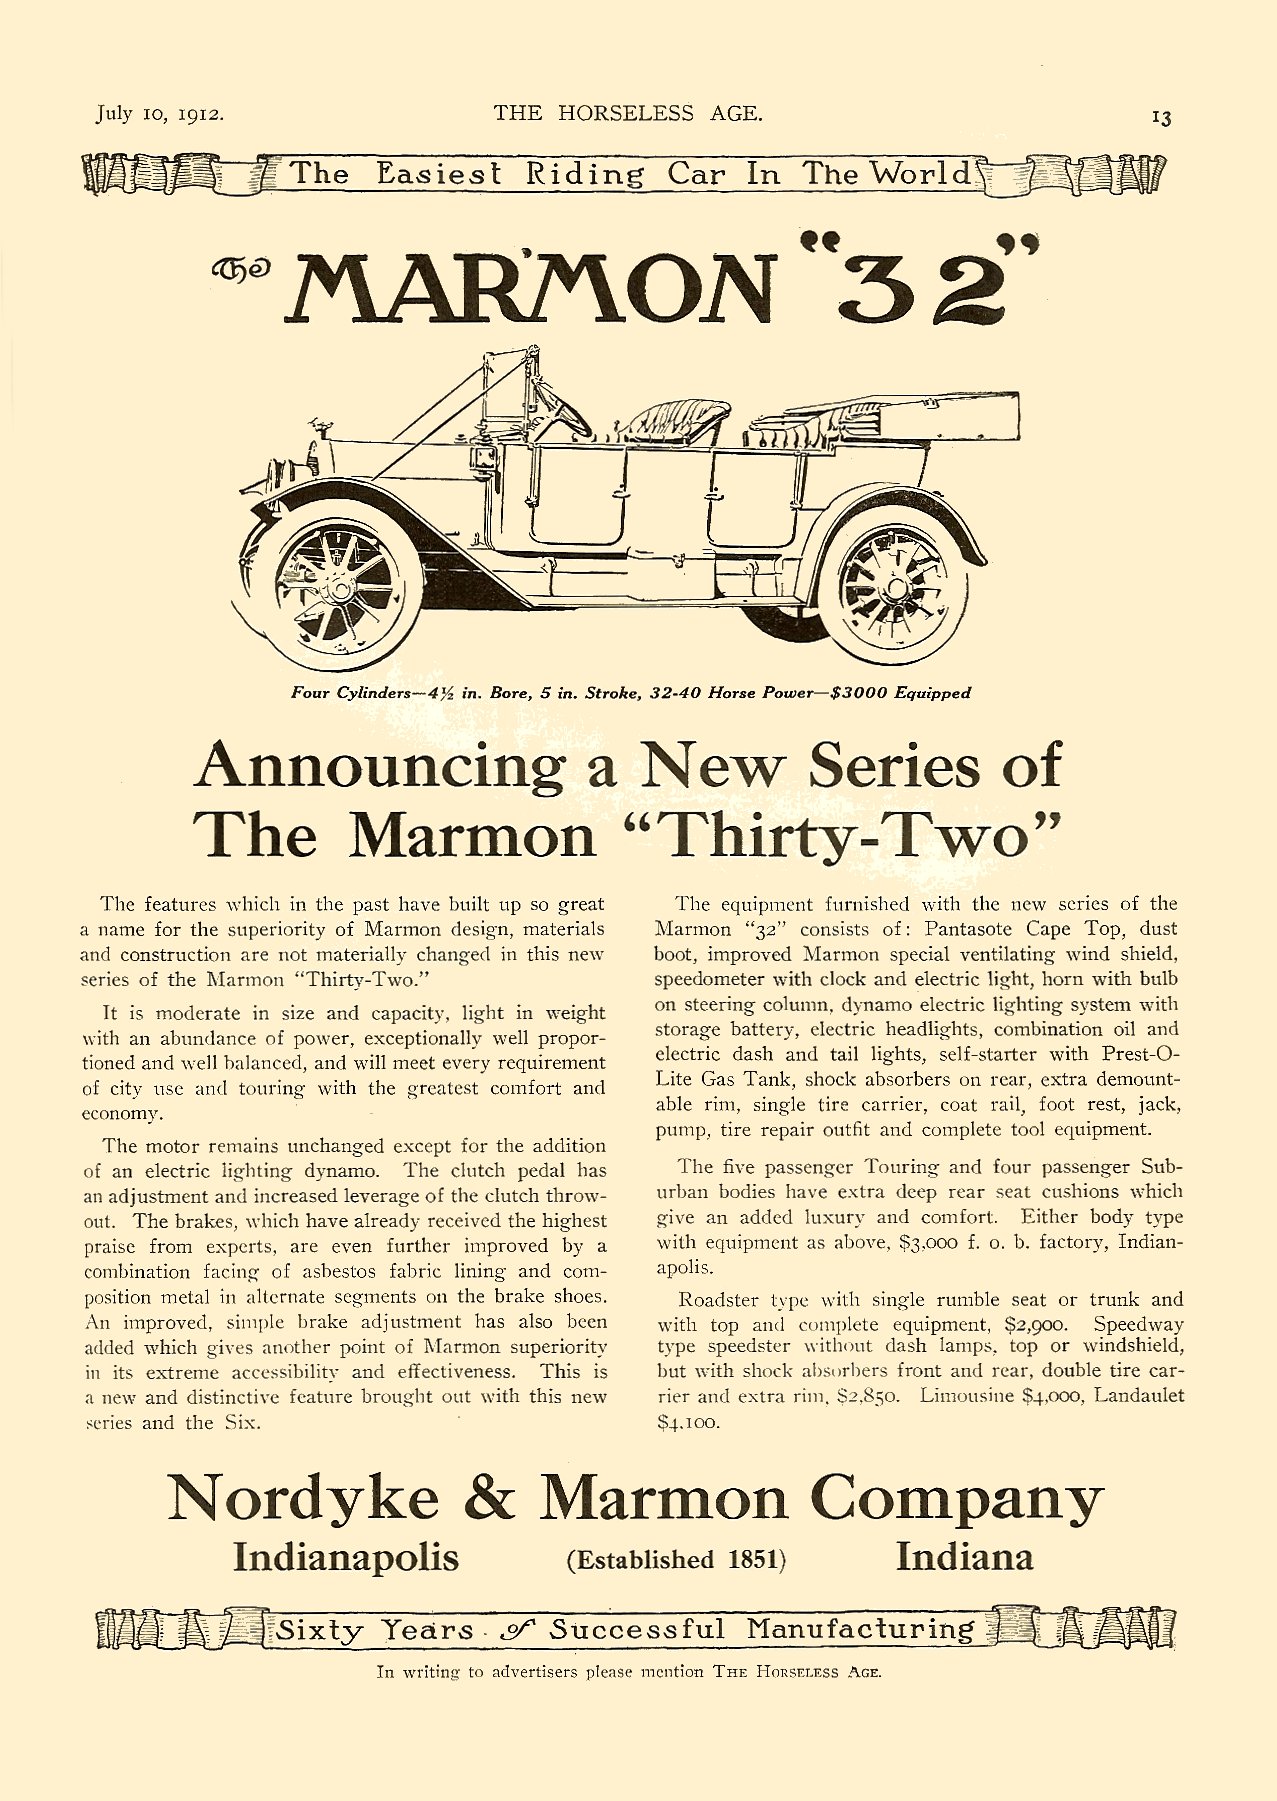 1912 Marmon Auto Advertising